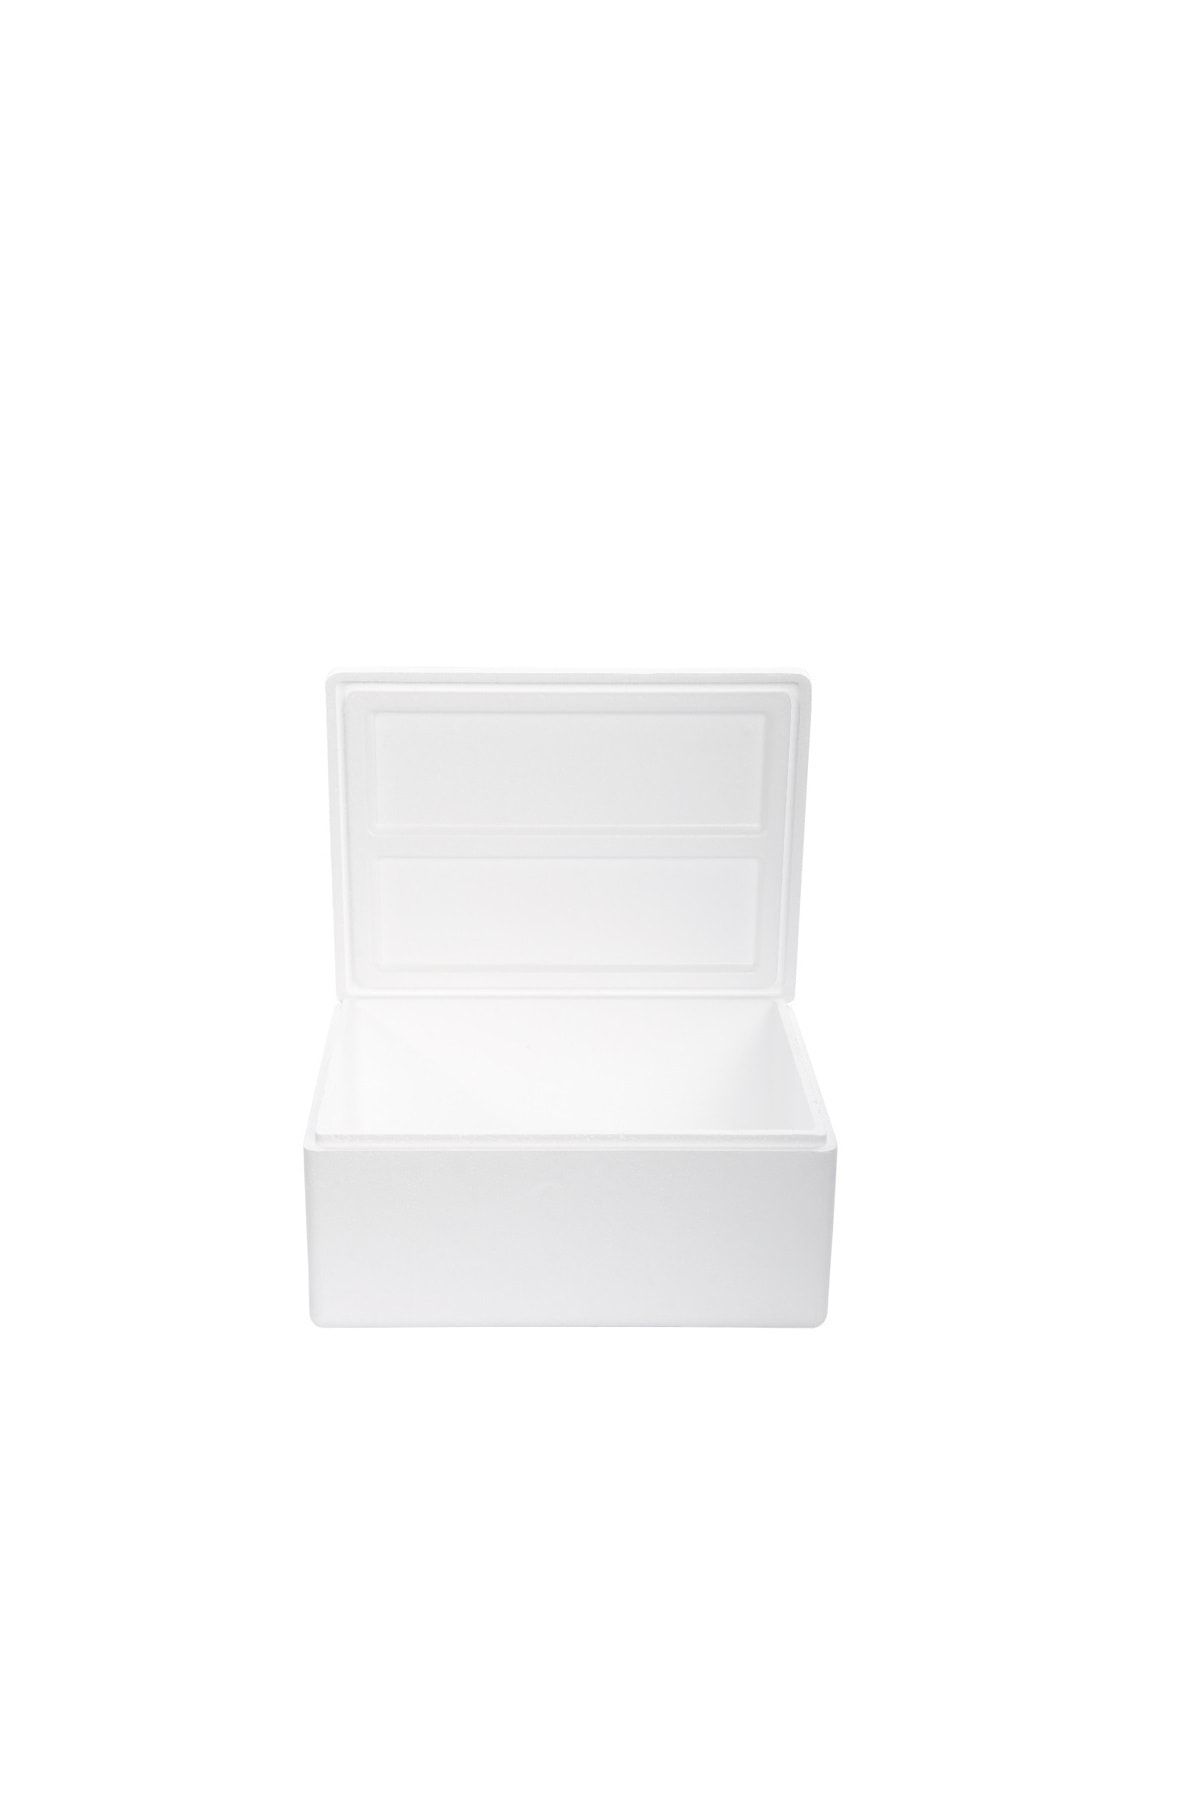 ViyolPazarı Beyaz Strafor Köpük Kutu (34,7x26x17) cm 4 kg - 1 Adet B-5